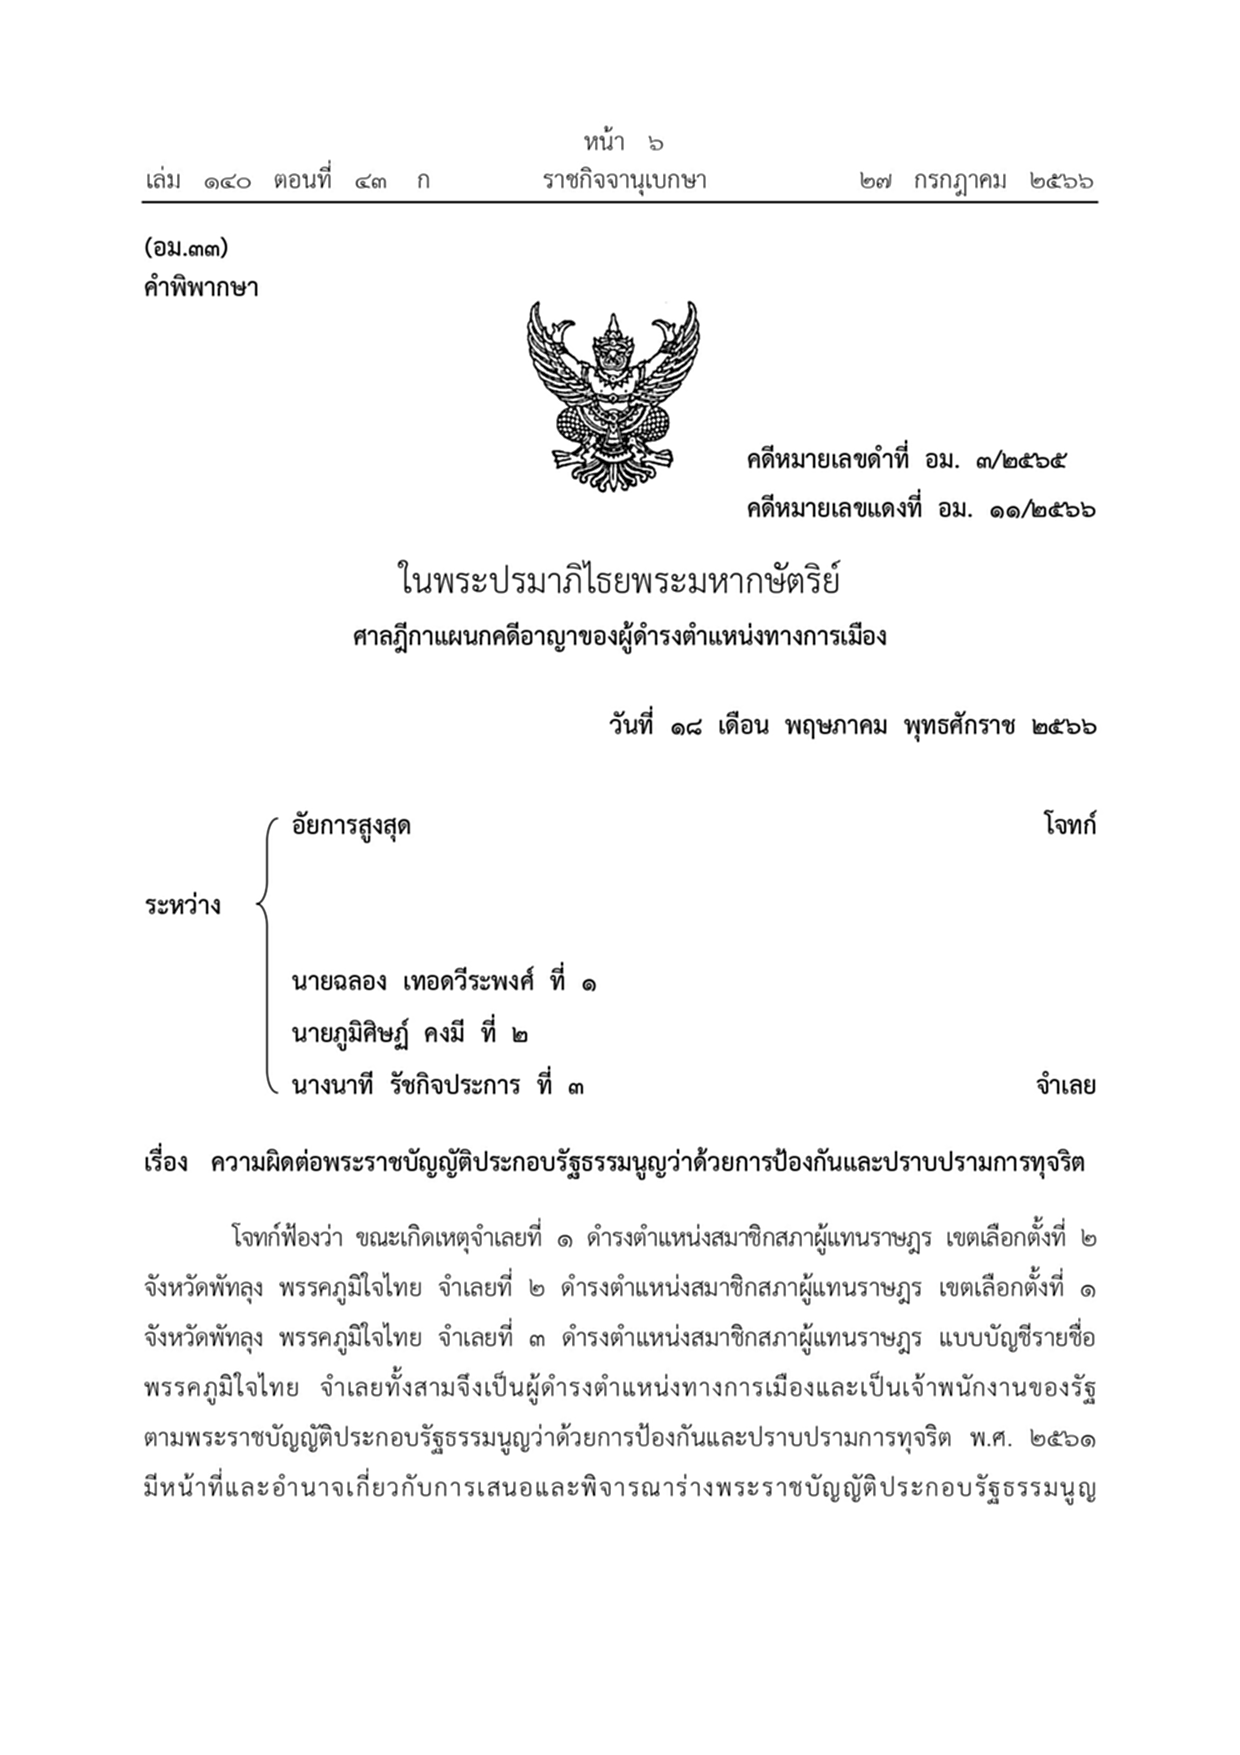 ราชกิจจานุเบกษาคำพิพากษา เสียบบัตรแทนกัน พรรคภูมิใจไทย